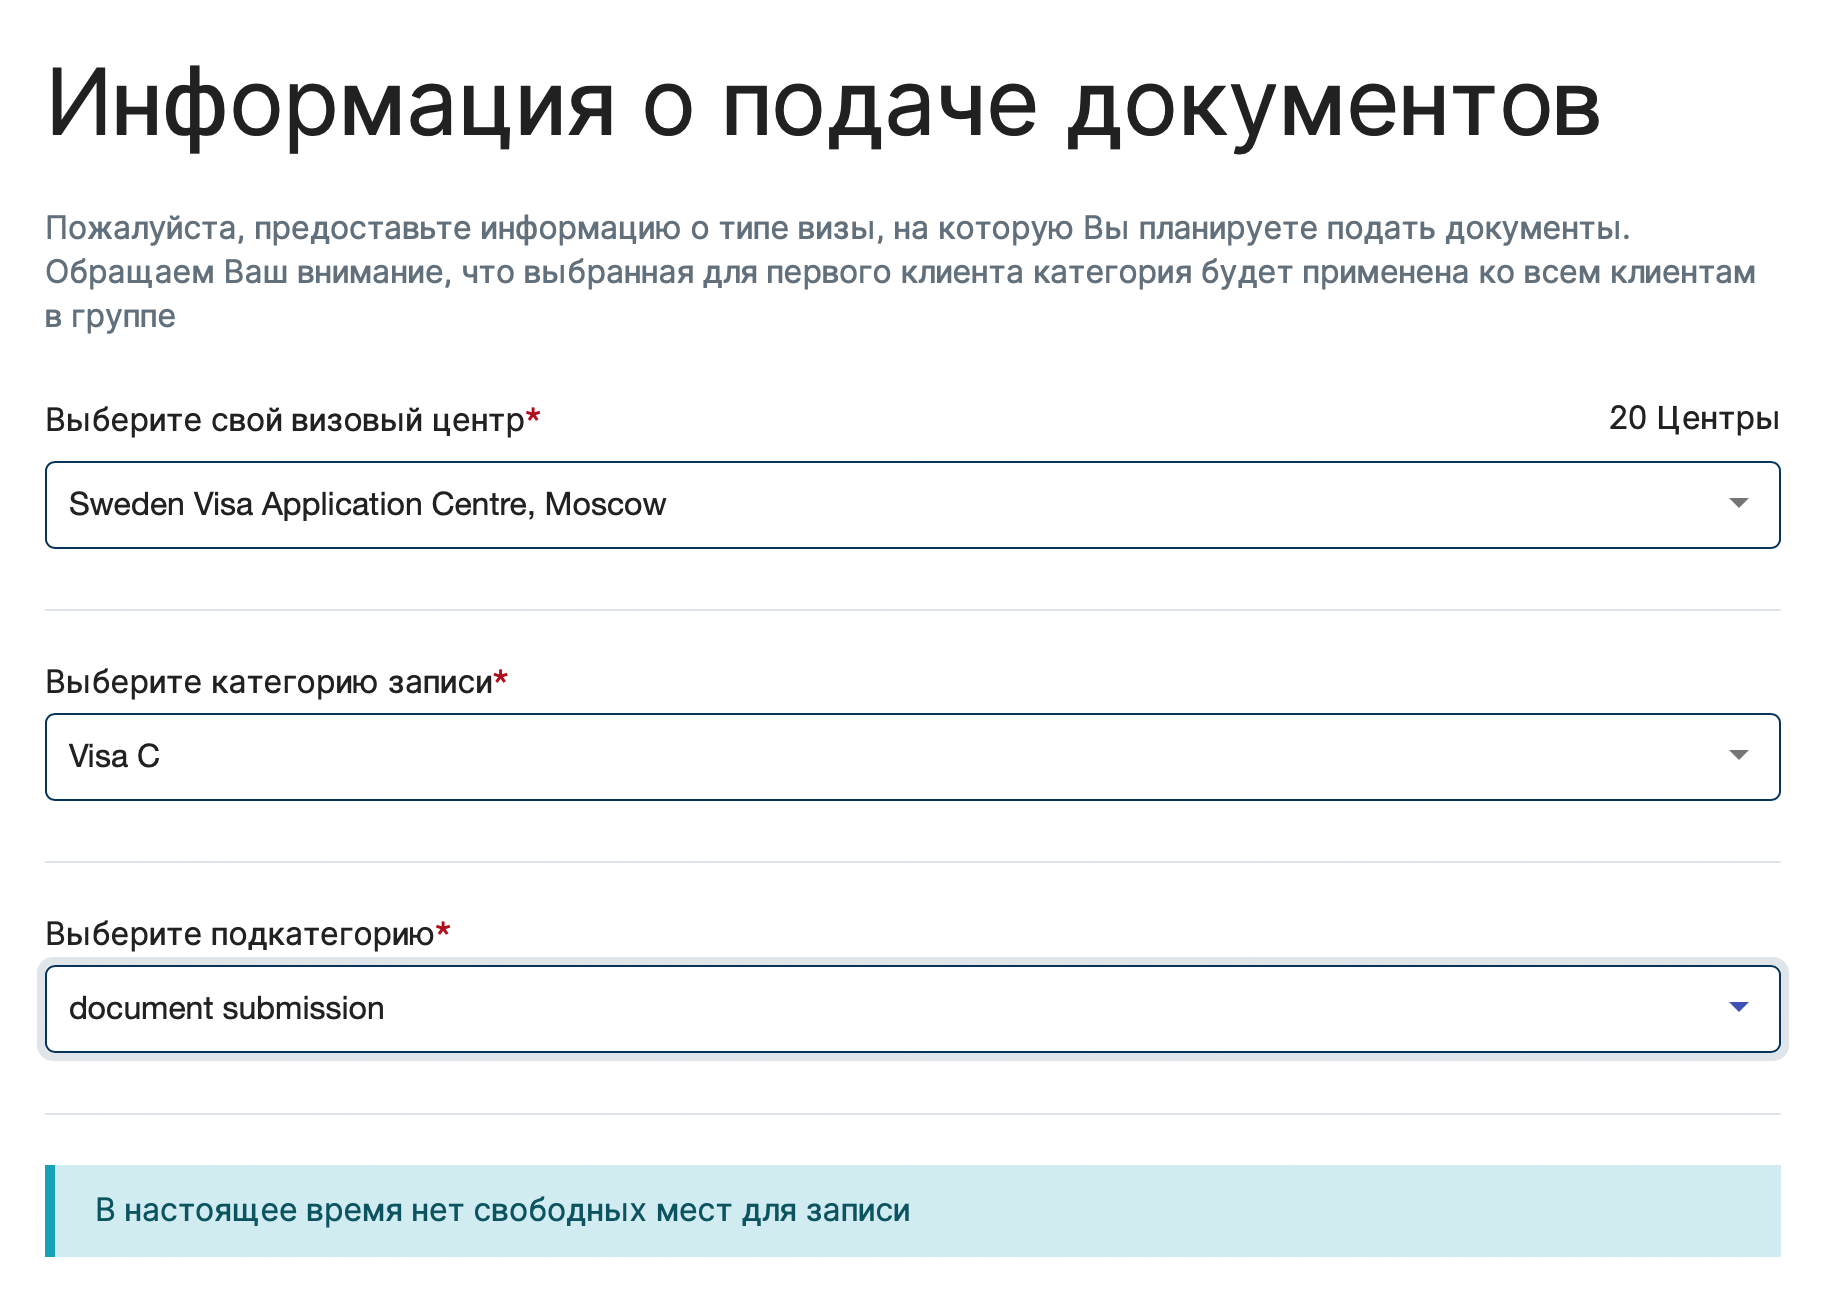 В Москве и еще 18 городах России свободных слотов для подачи заявки на шведский шенген нет. Источник: vfsglobal.com